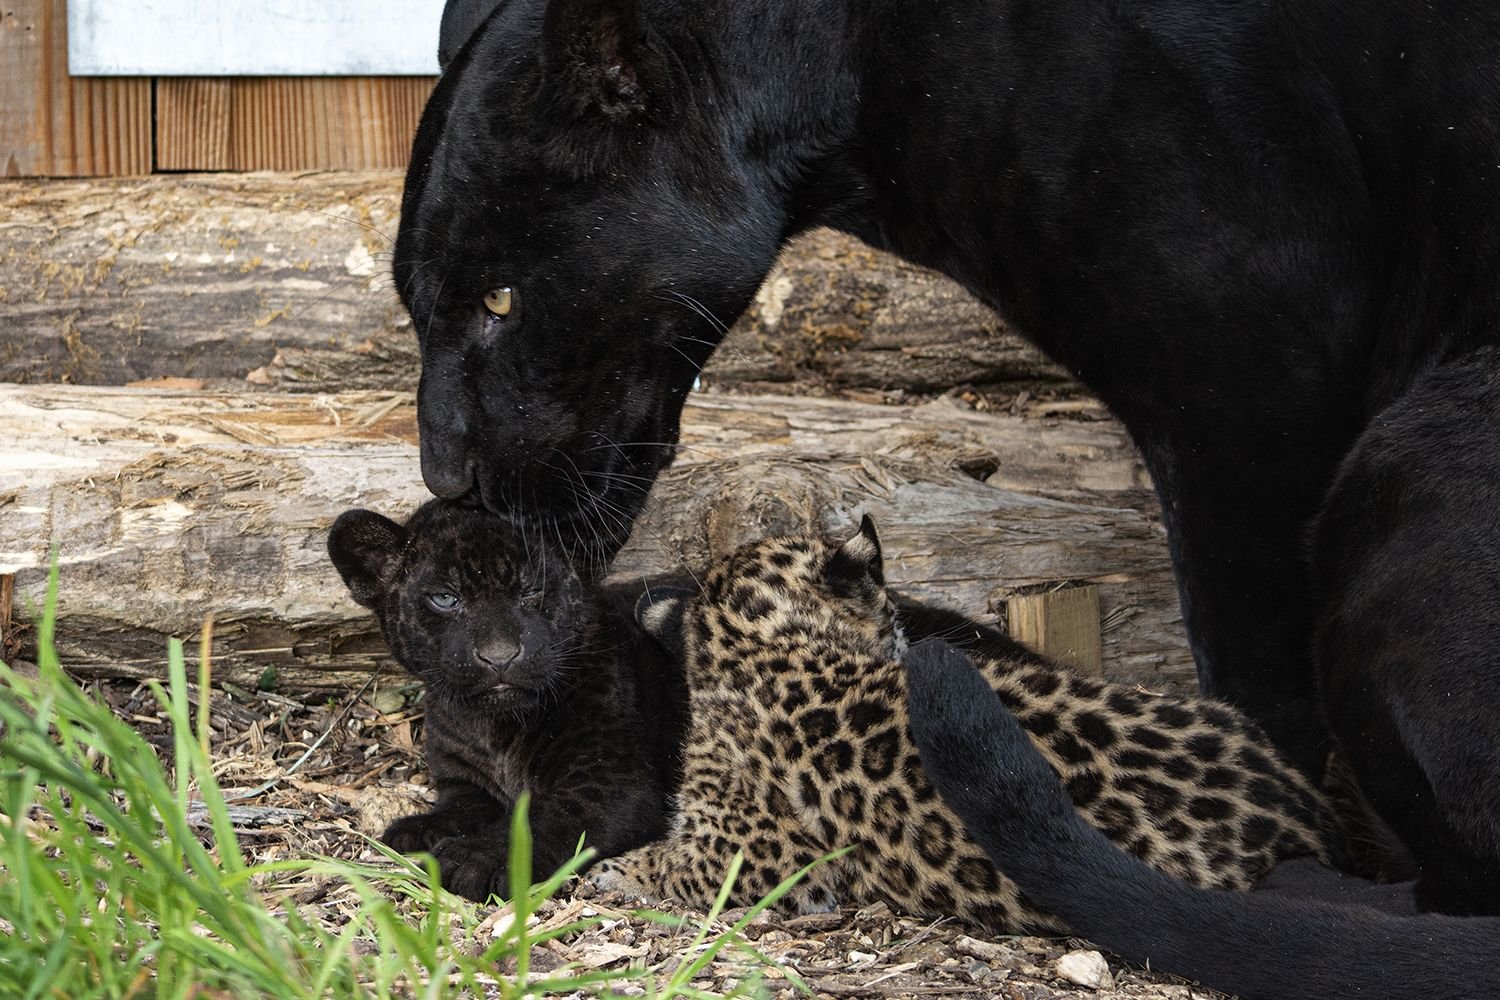 Les deux bébés jaguars sont nés au parc animalier Parrot World de Crécy-la-Chapelle (Seine-et-Marne) début avril. Après avoir été soignés pendant plusieurs semaines, afin de s'assurer de leur bonne santé, ils sont enfin présentés au public. Chloé Gourdon/Omega Tropical Park